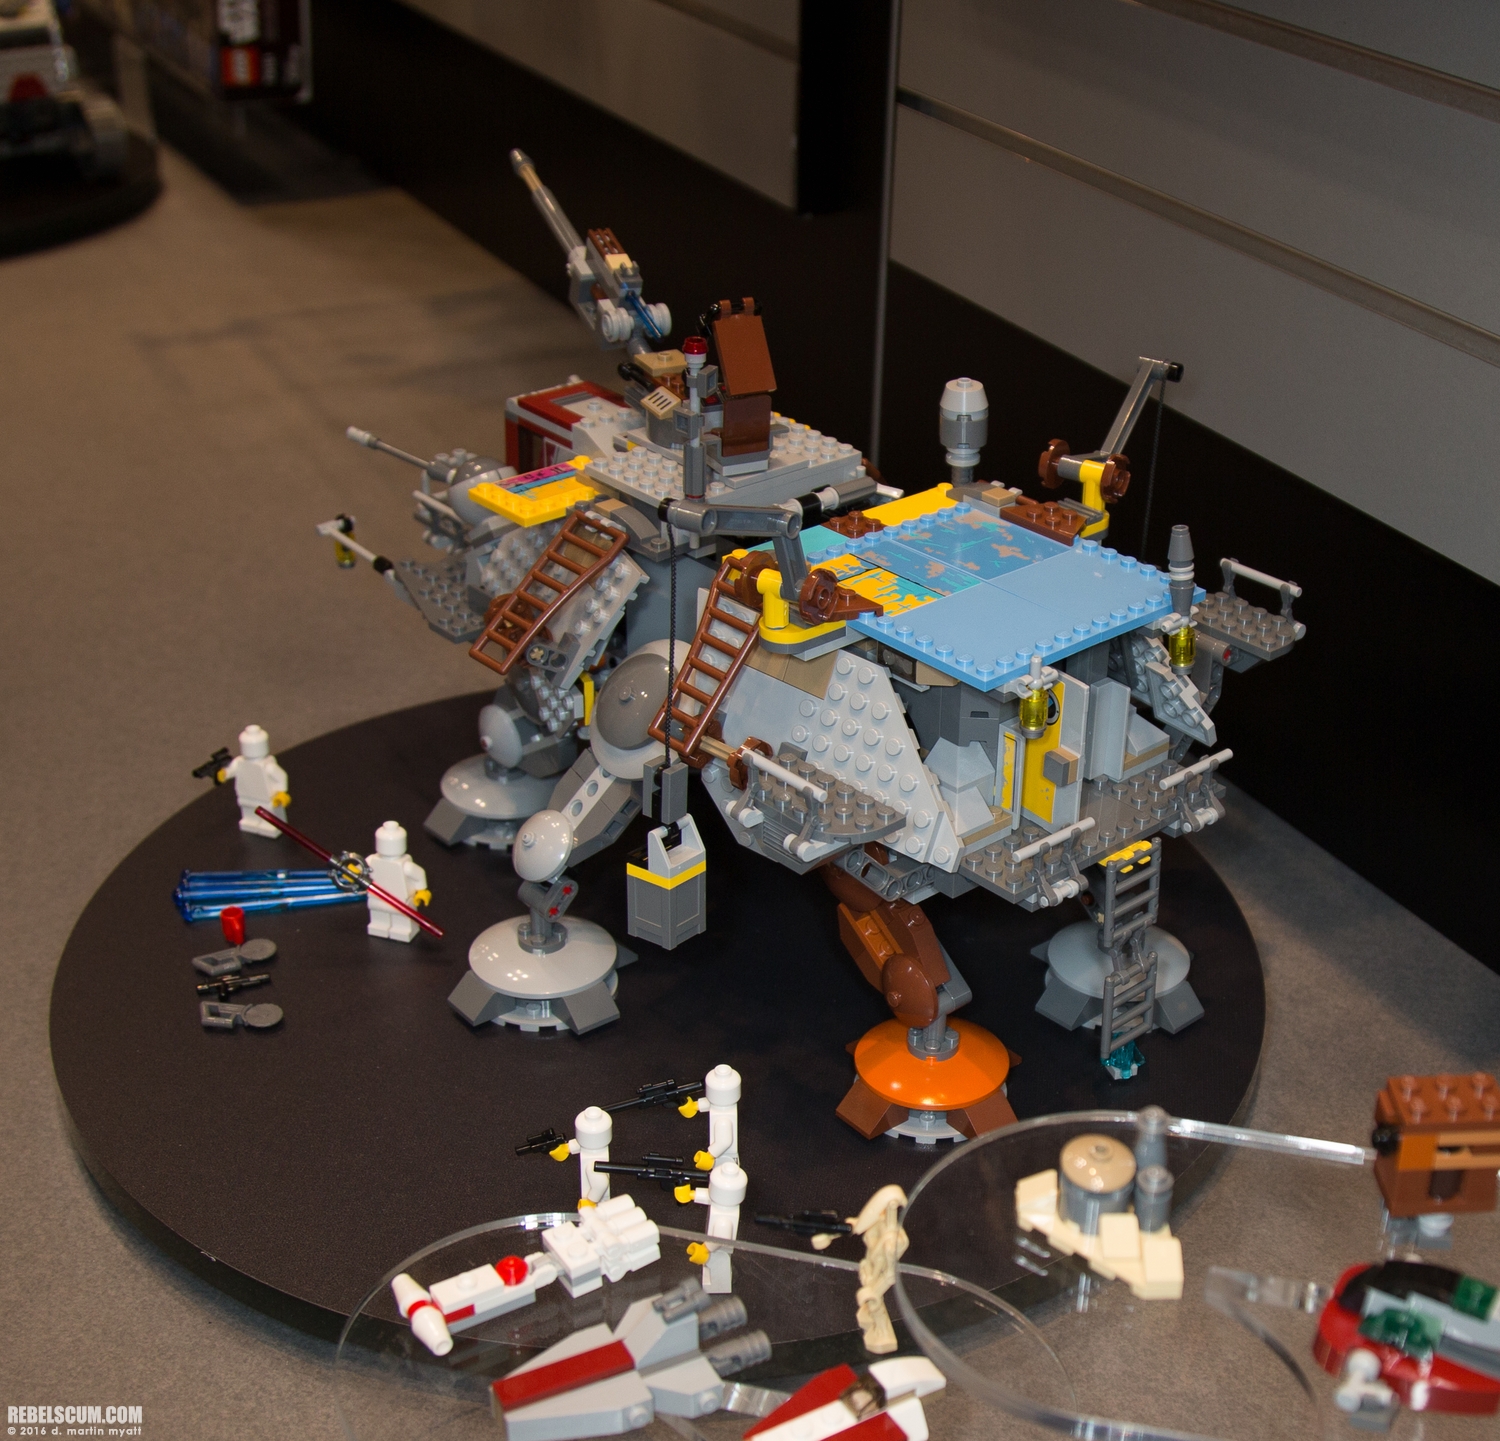 LEGO-2015-International-Toy-Fair-Star-Wars-110.jpg